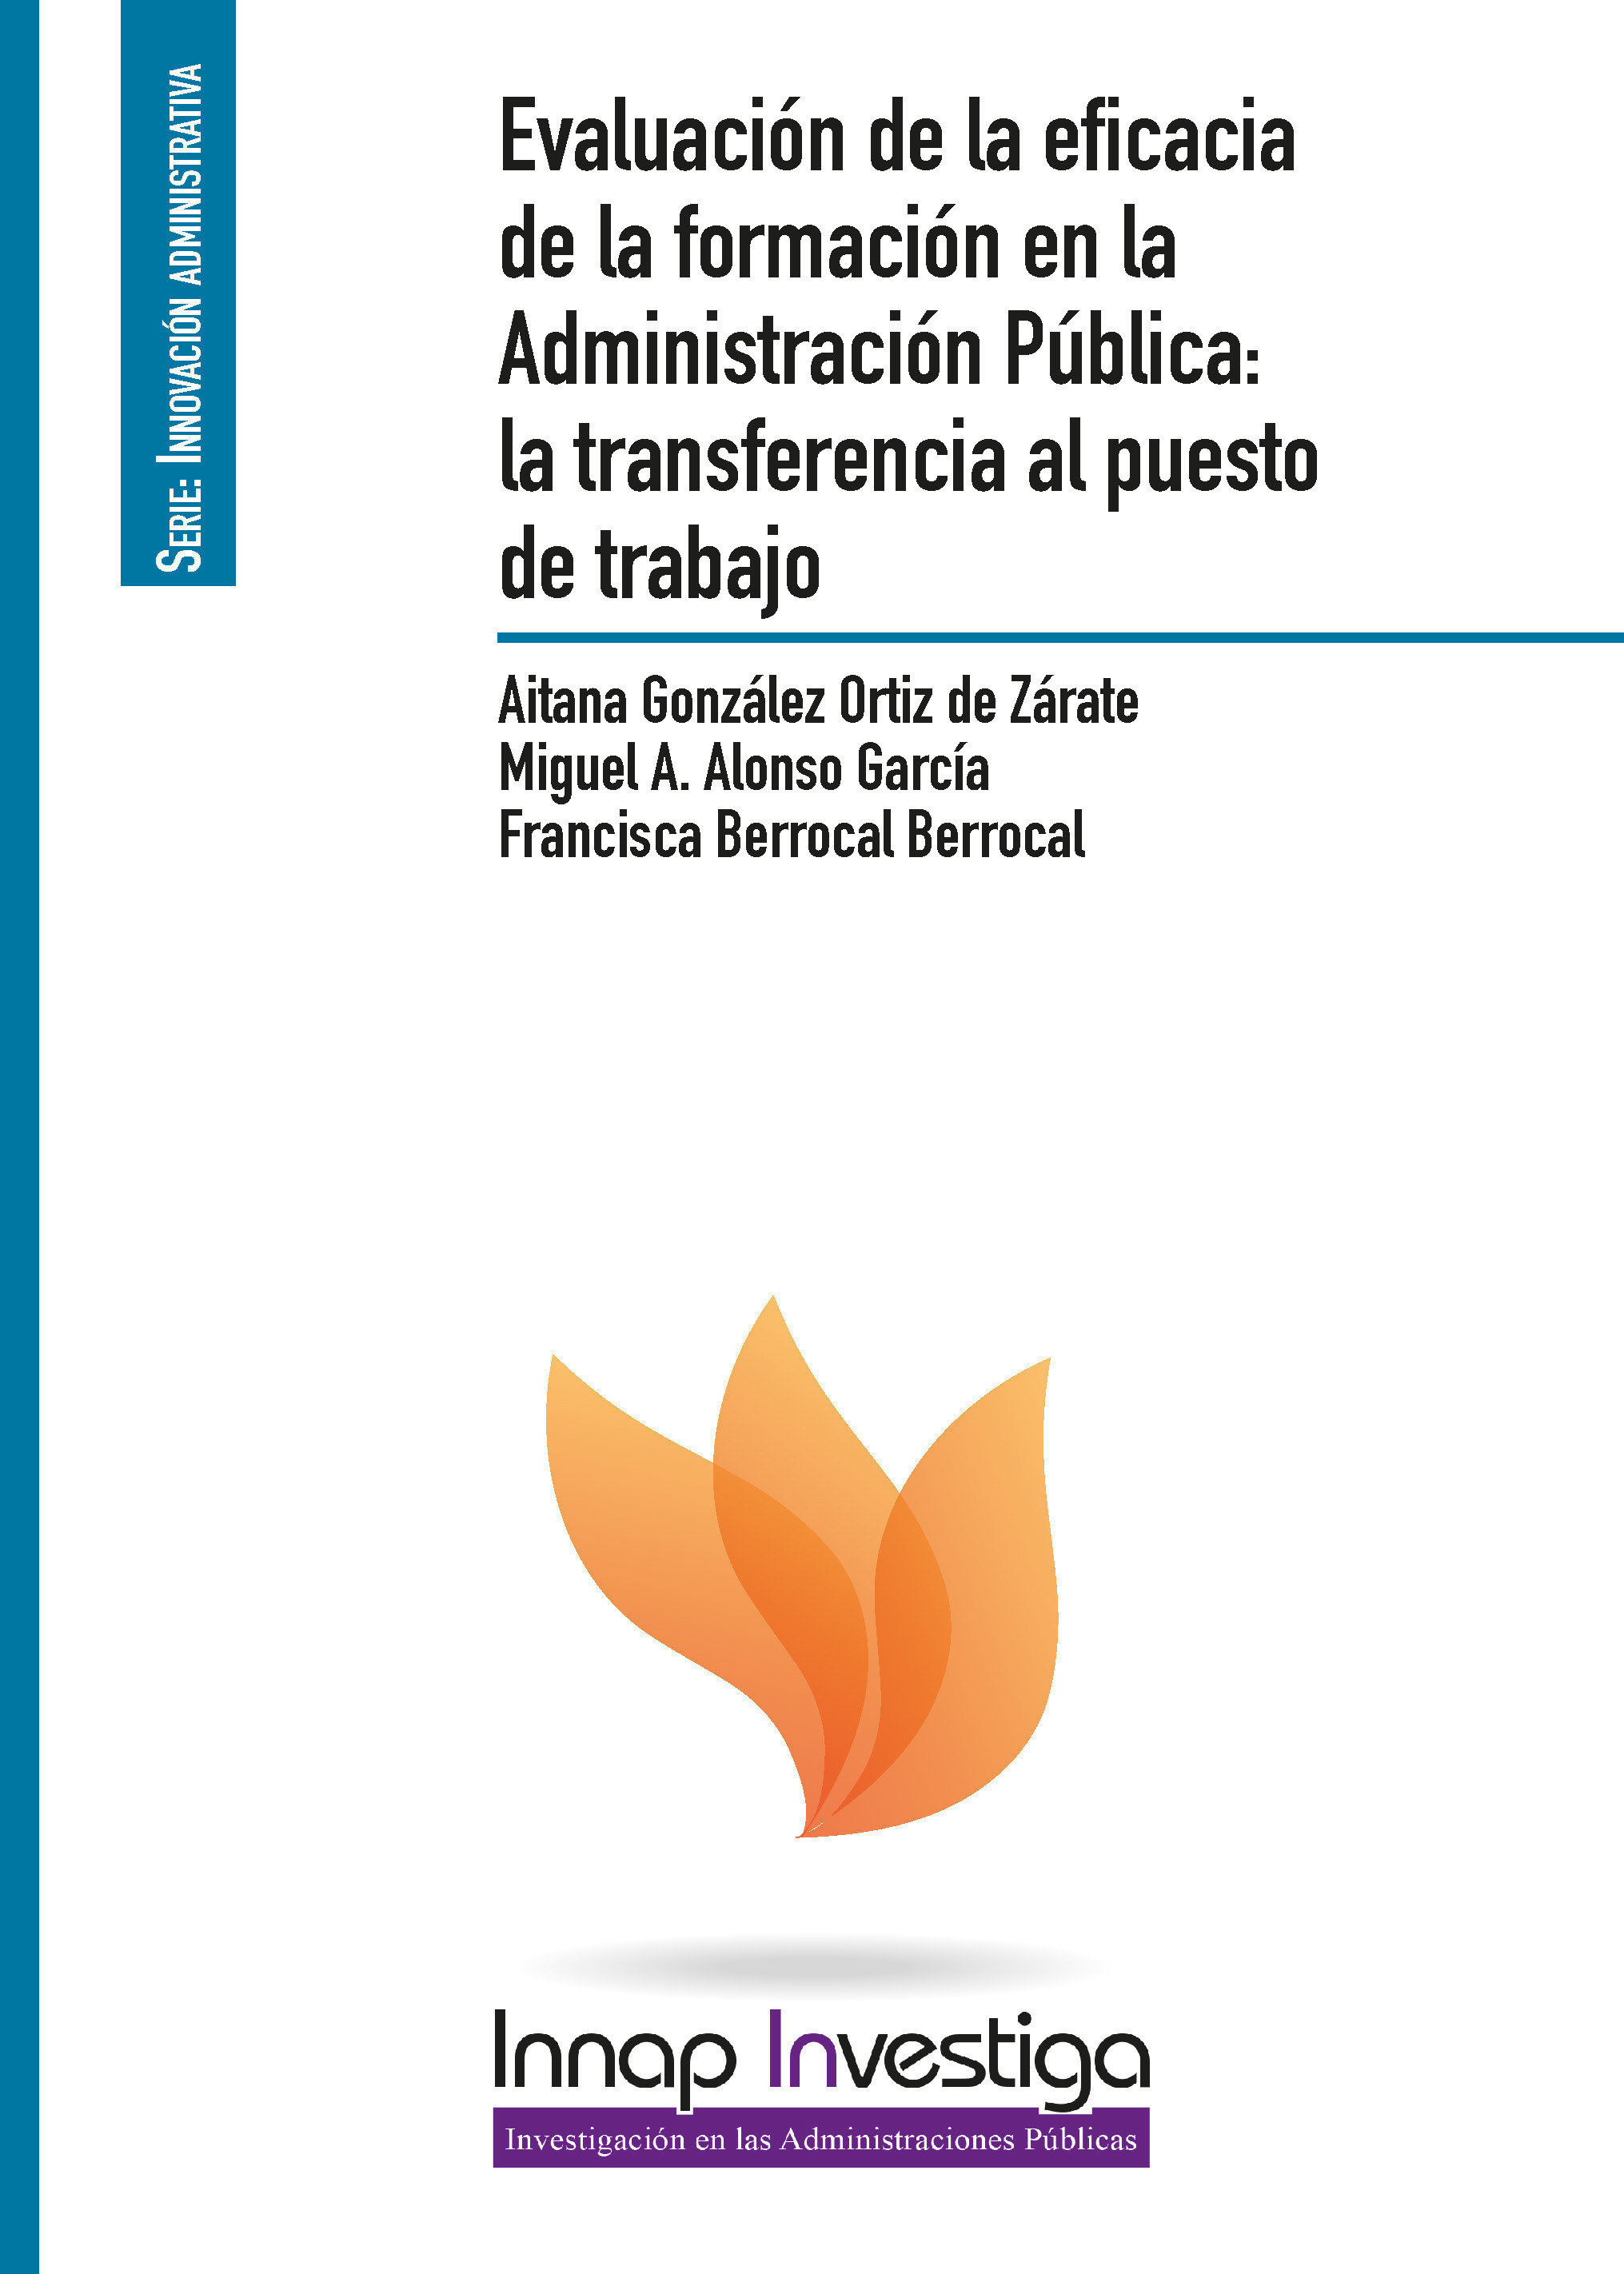 Evaluación de la eficacia de la formación en la Administración Pública: la transferencia al puesto de trabajo 